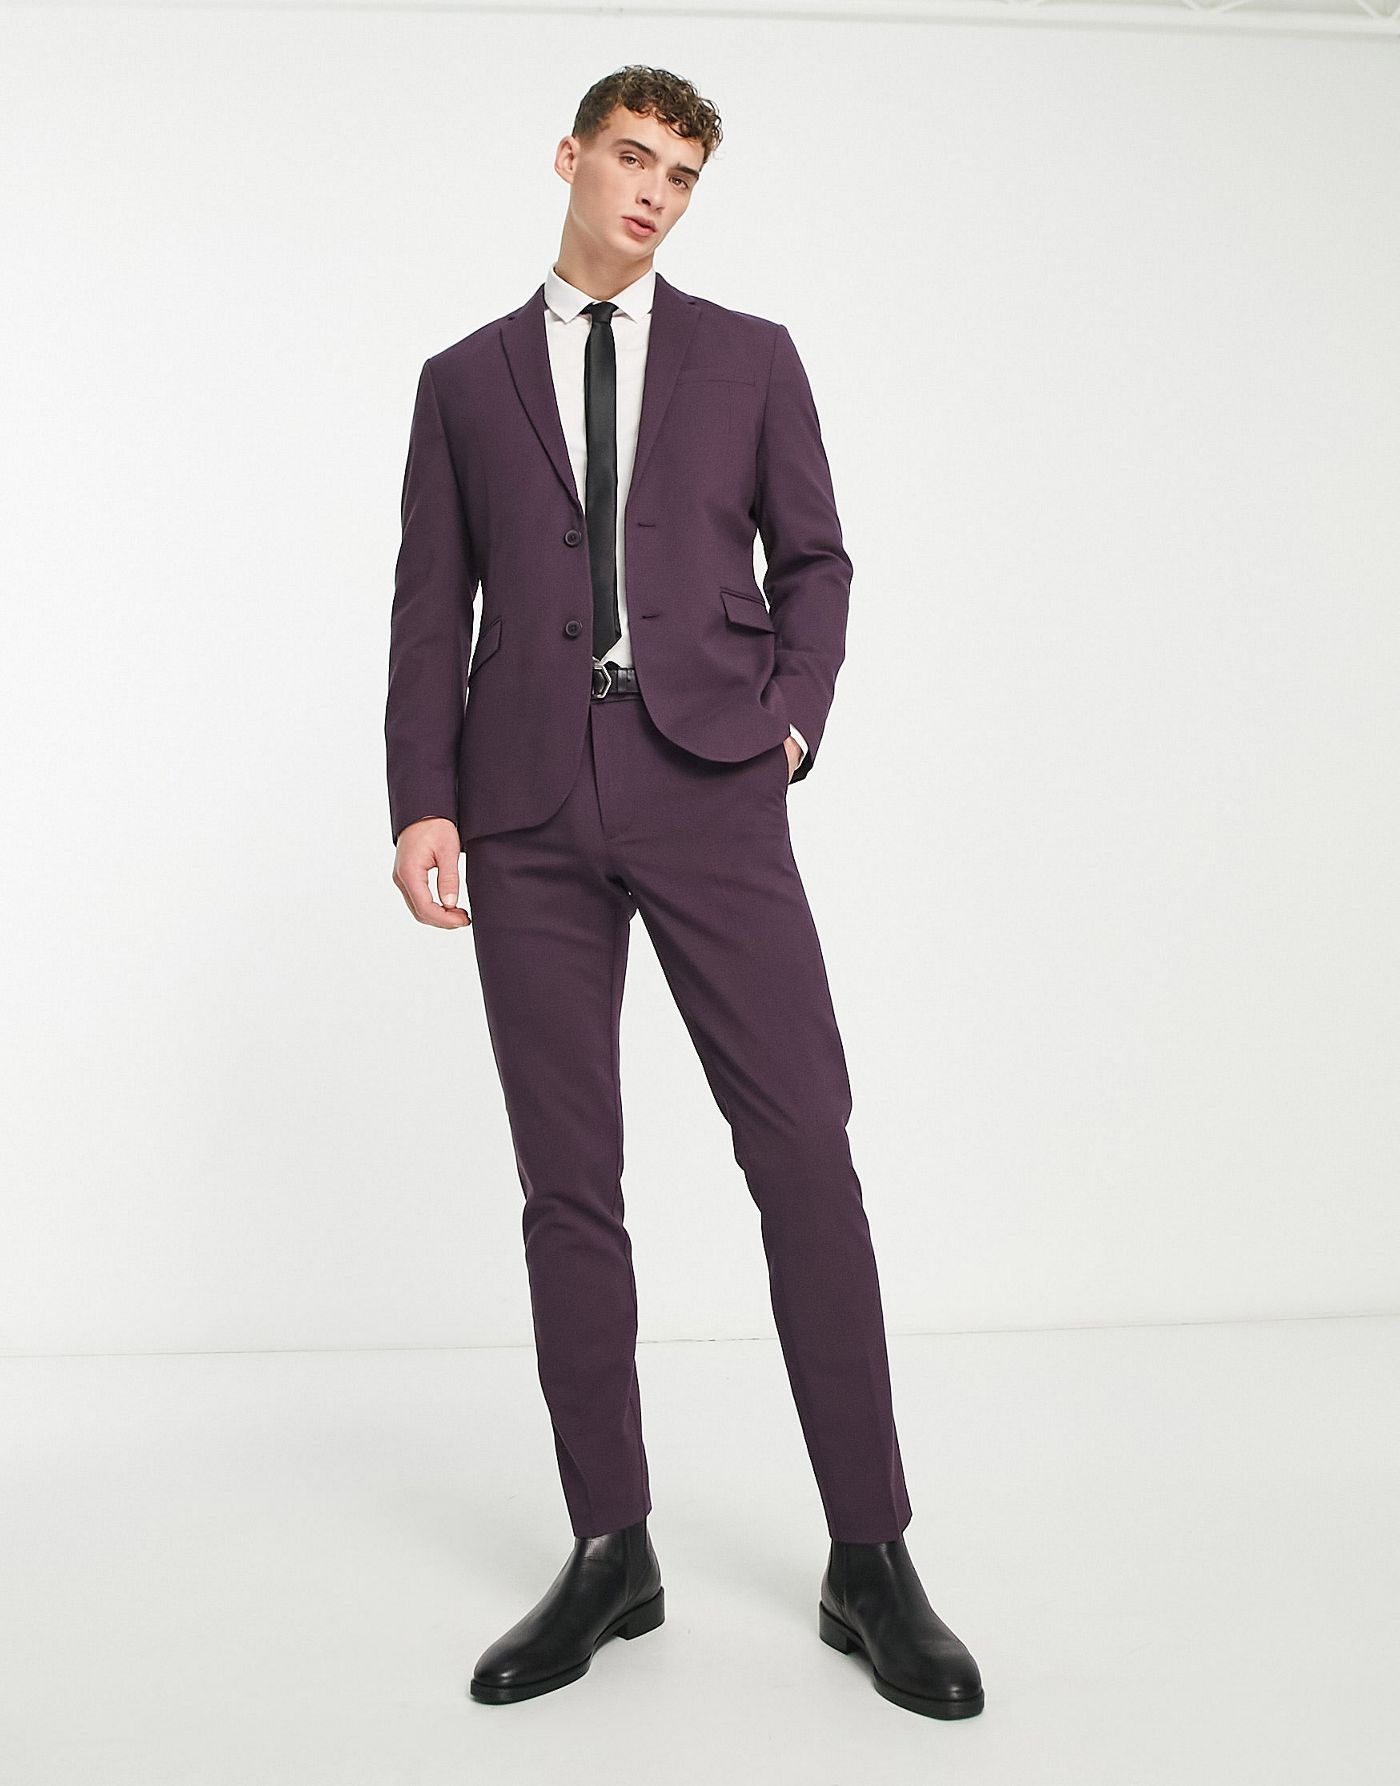 New Look skinny suit jacket in dark plum 